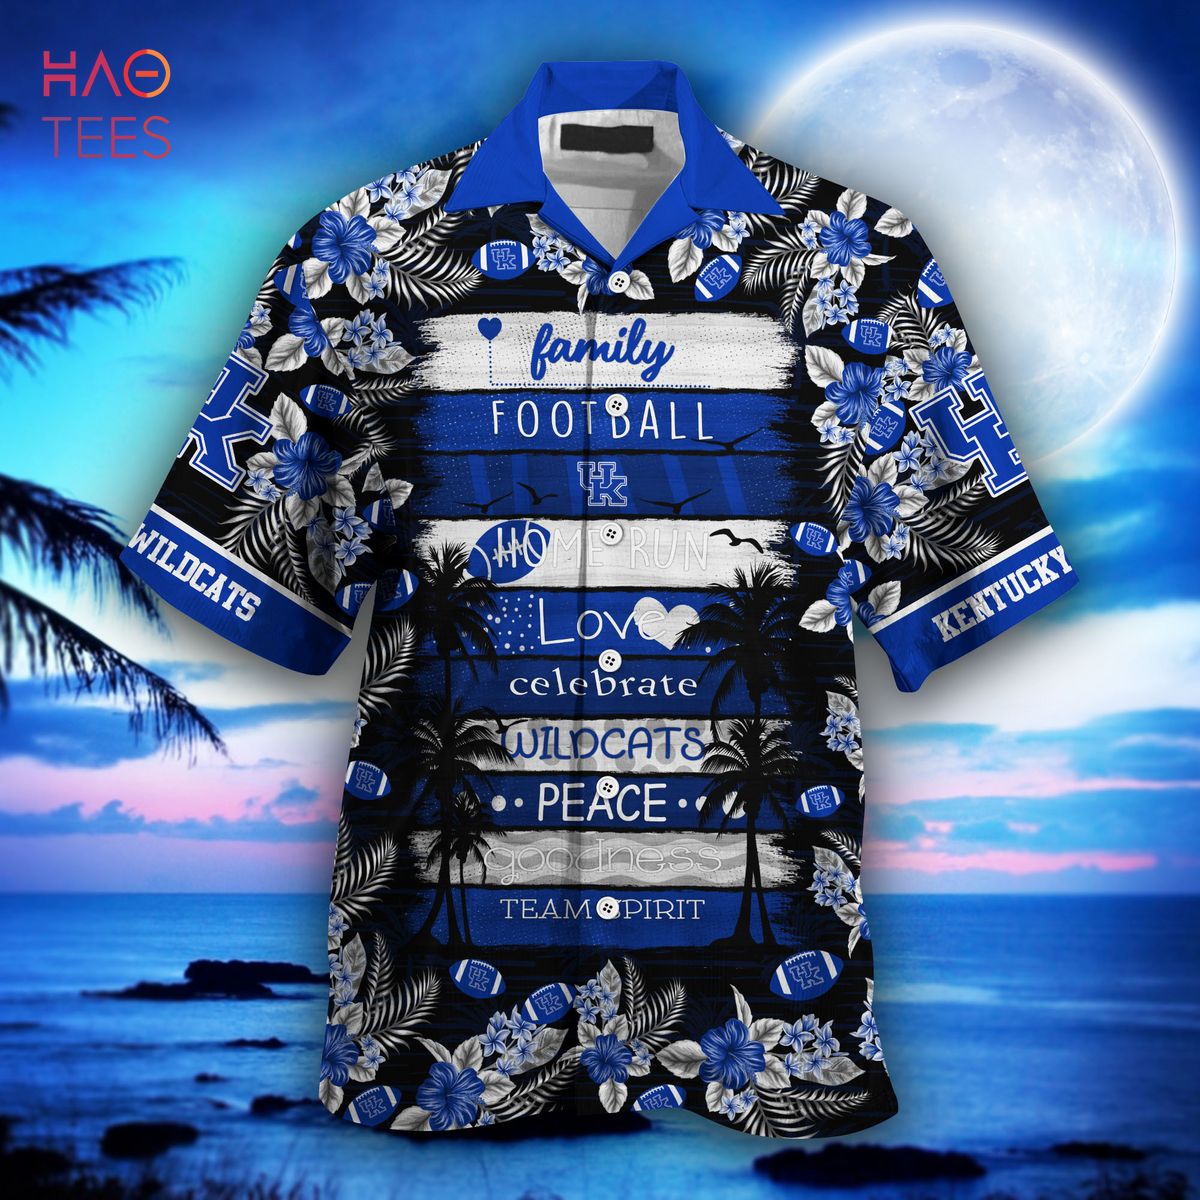 [LIMITED] Kentucky Wildcats  Hawaiian Shirt, New Gift For Summer